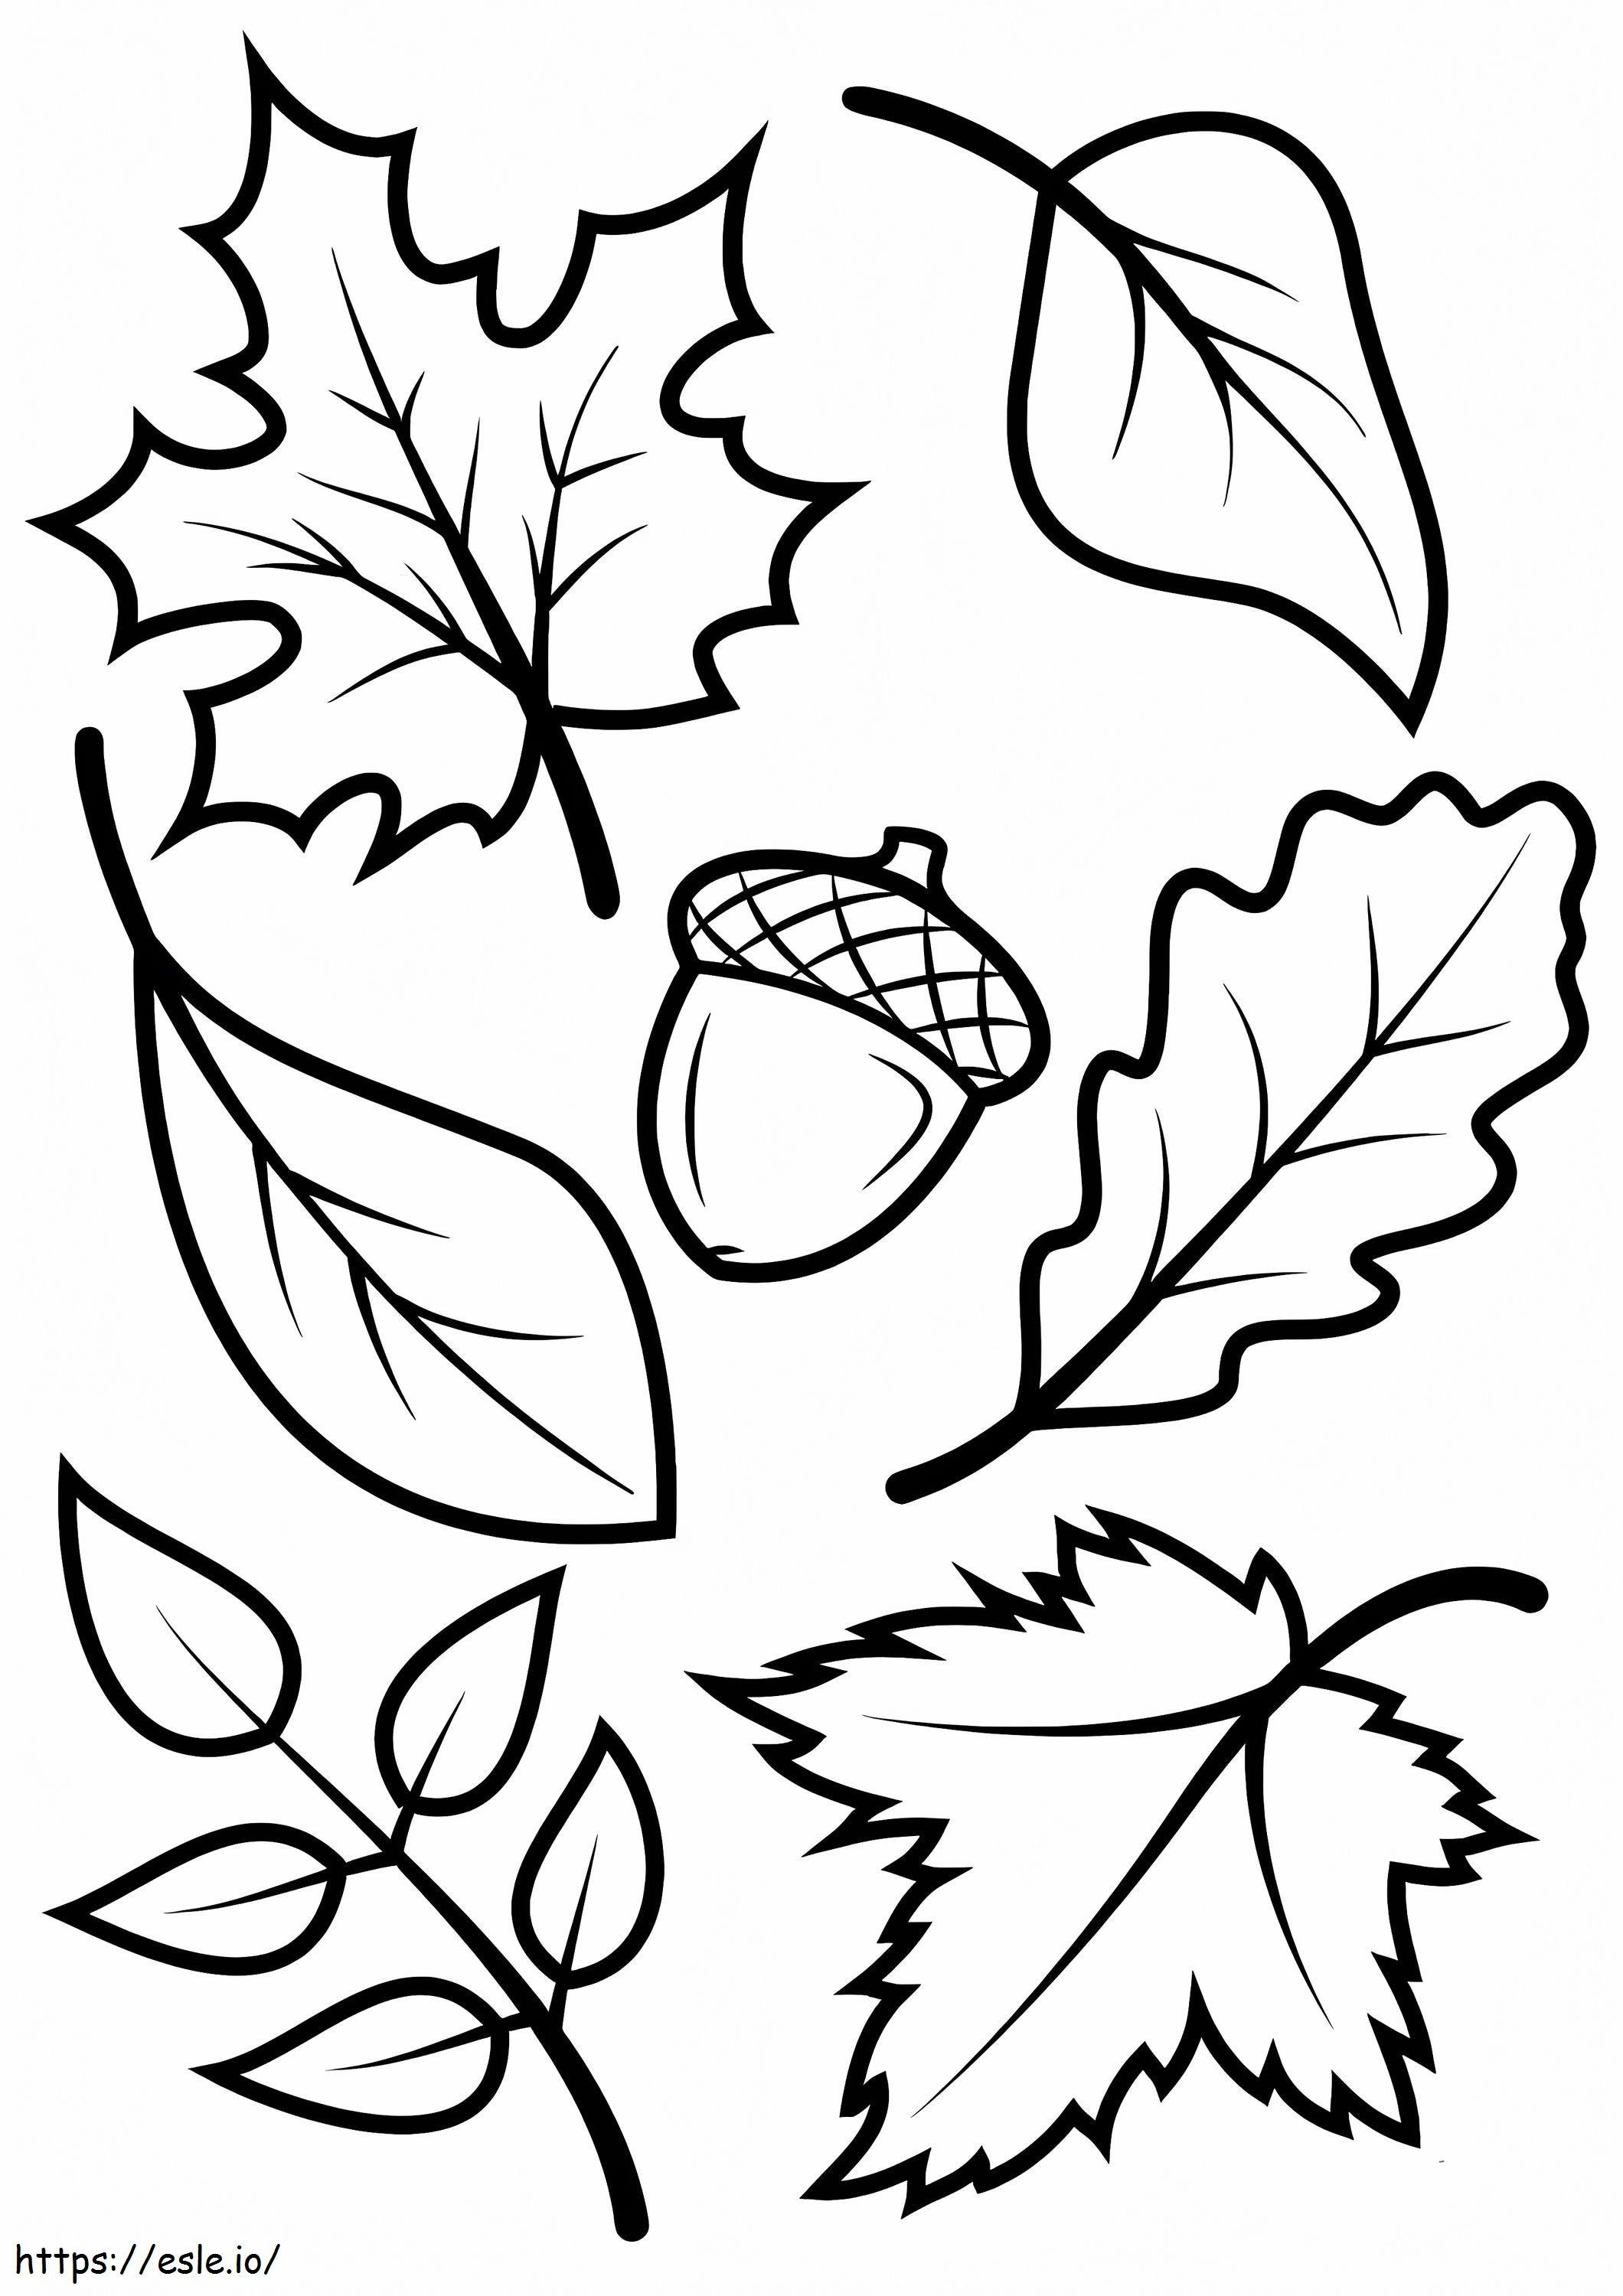 Herbstblätter und Eichel ausmalbilder